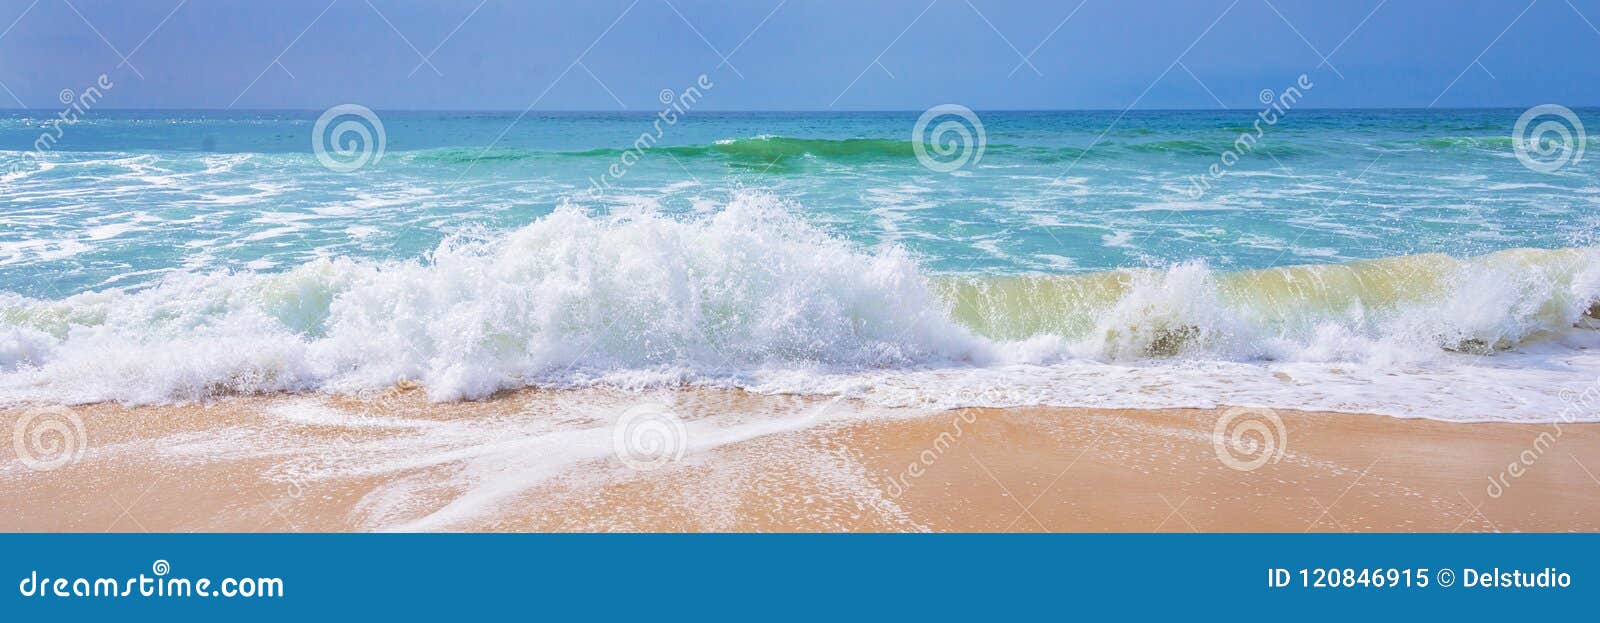 atlantic ocean, view of waves on the beach